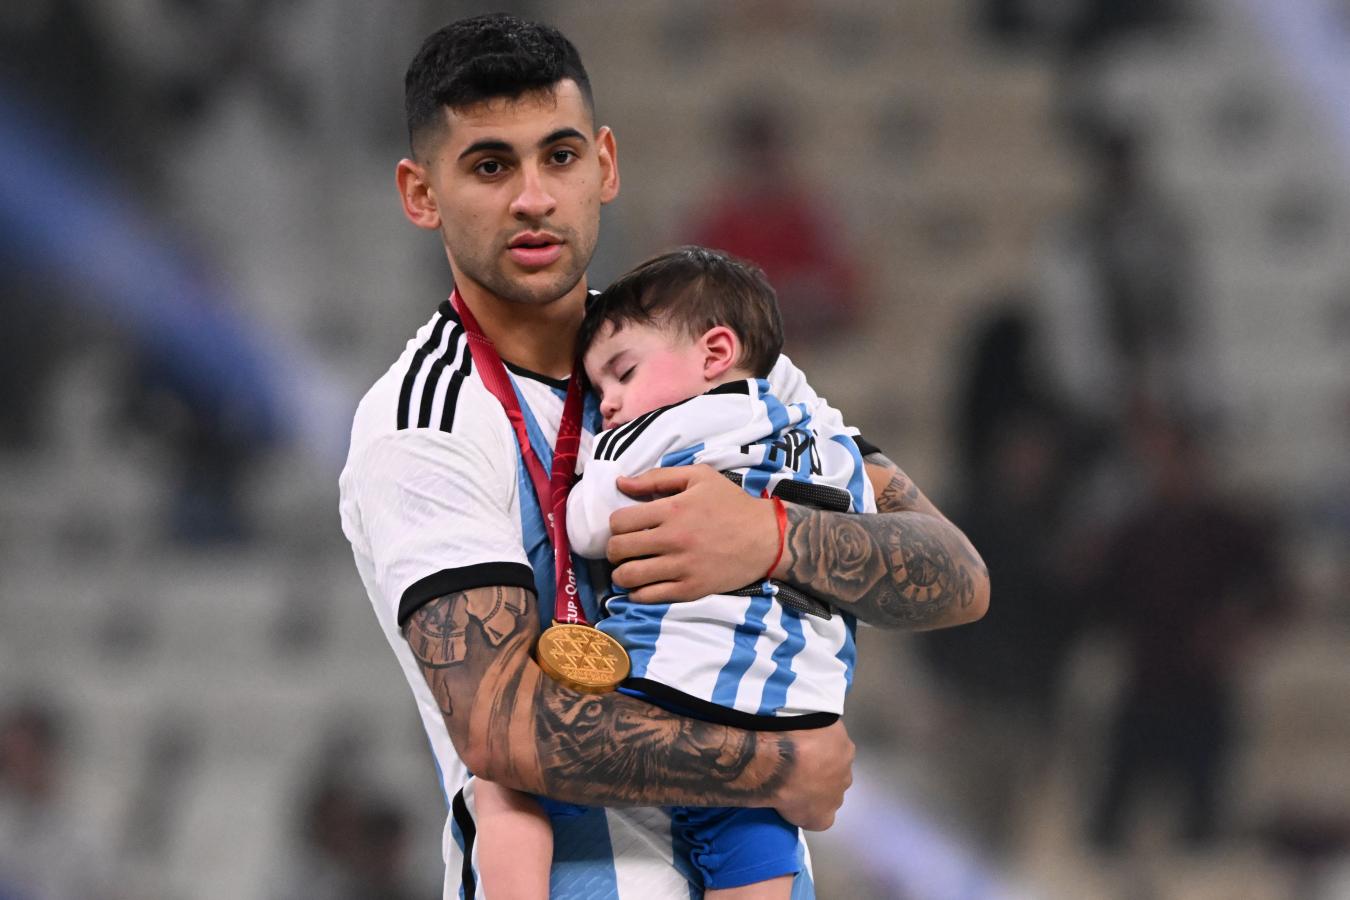 Imagen Cuti, la medalla de campeón y el Mini Romero en sus brazos. "Fue lo más lindo vivirlo al lado de él", admitió. Foto: AFP